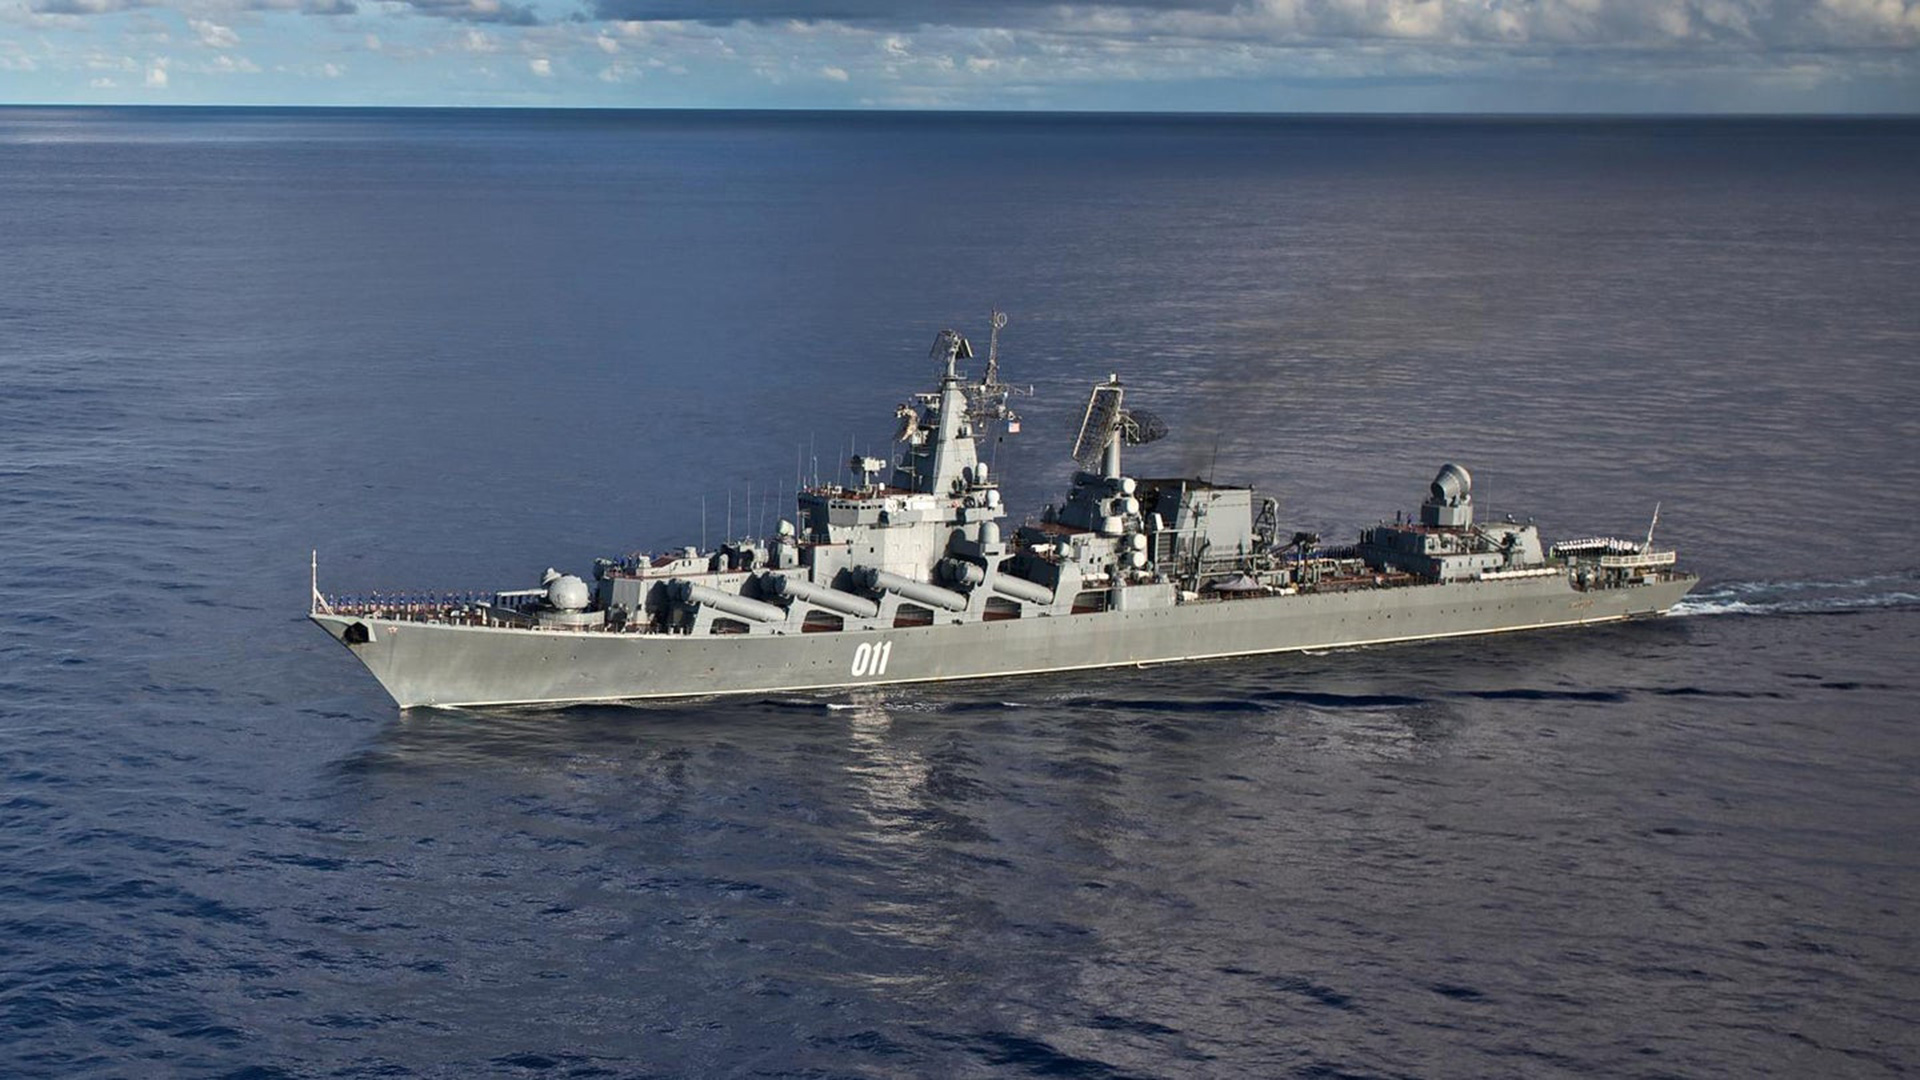 Una flotilla de siete buques de guerra de la Armada rusa navegó frente a la costa de Honolulu, Hawai